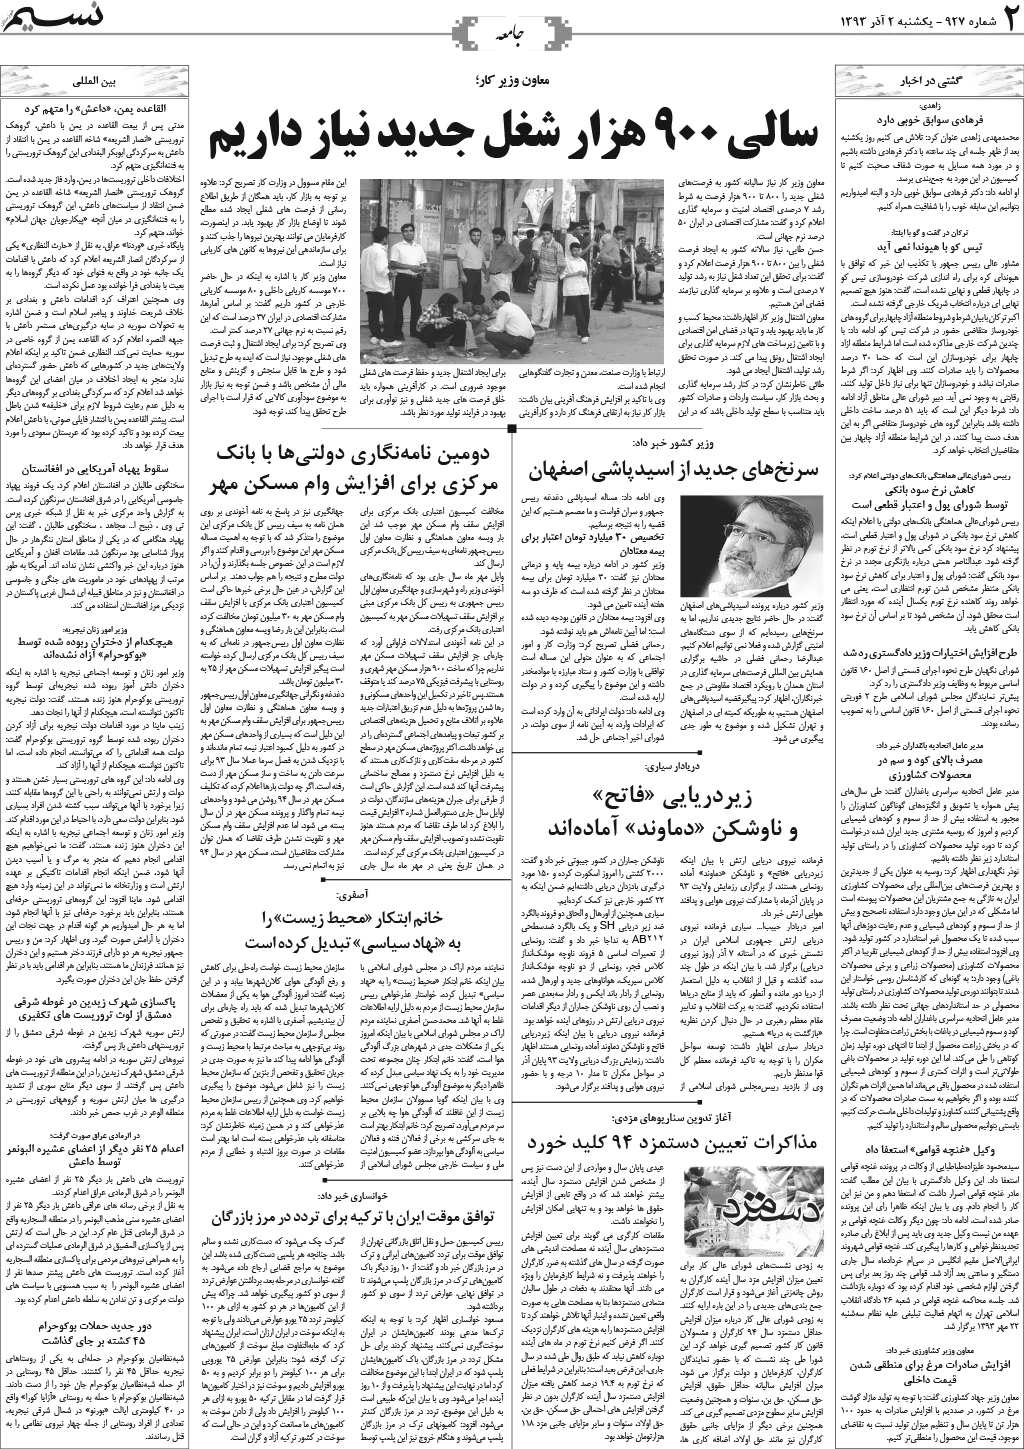 صفحه جامعه روزنامه نسیم شماره 927